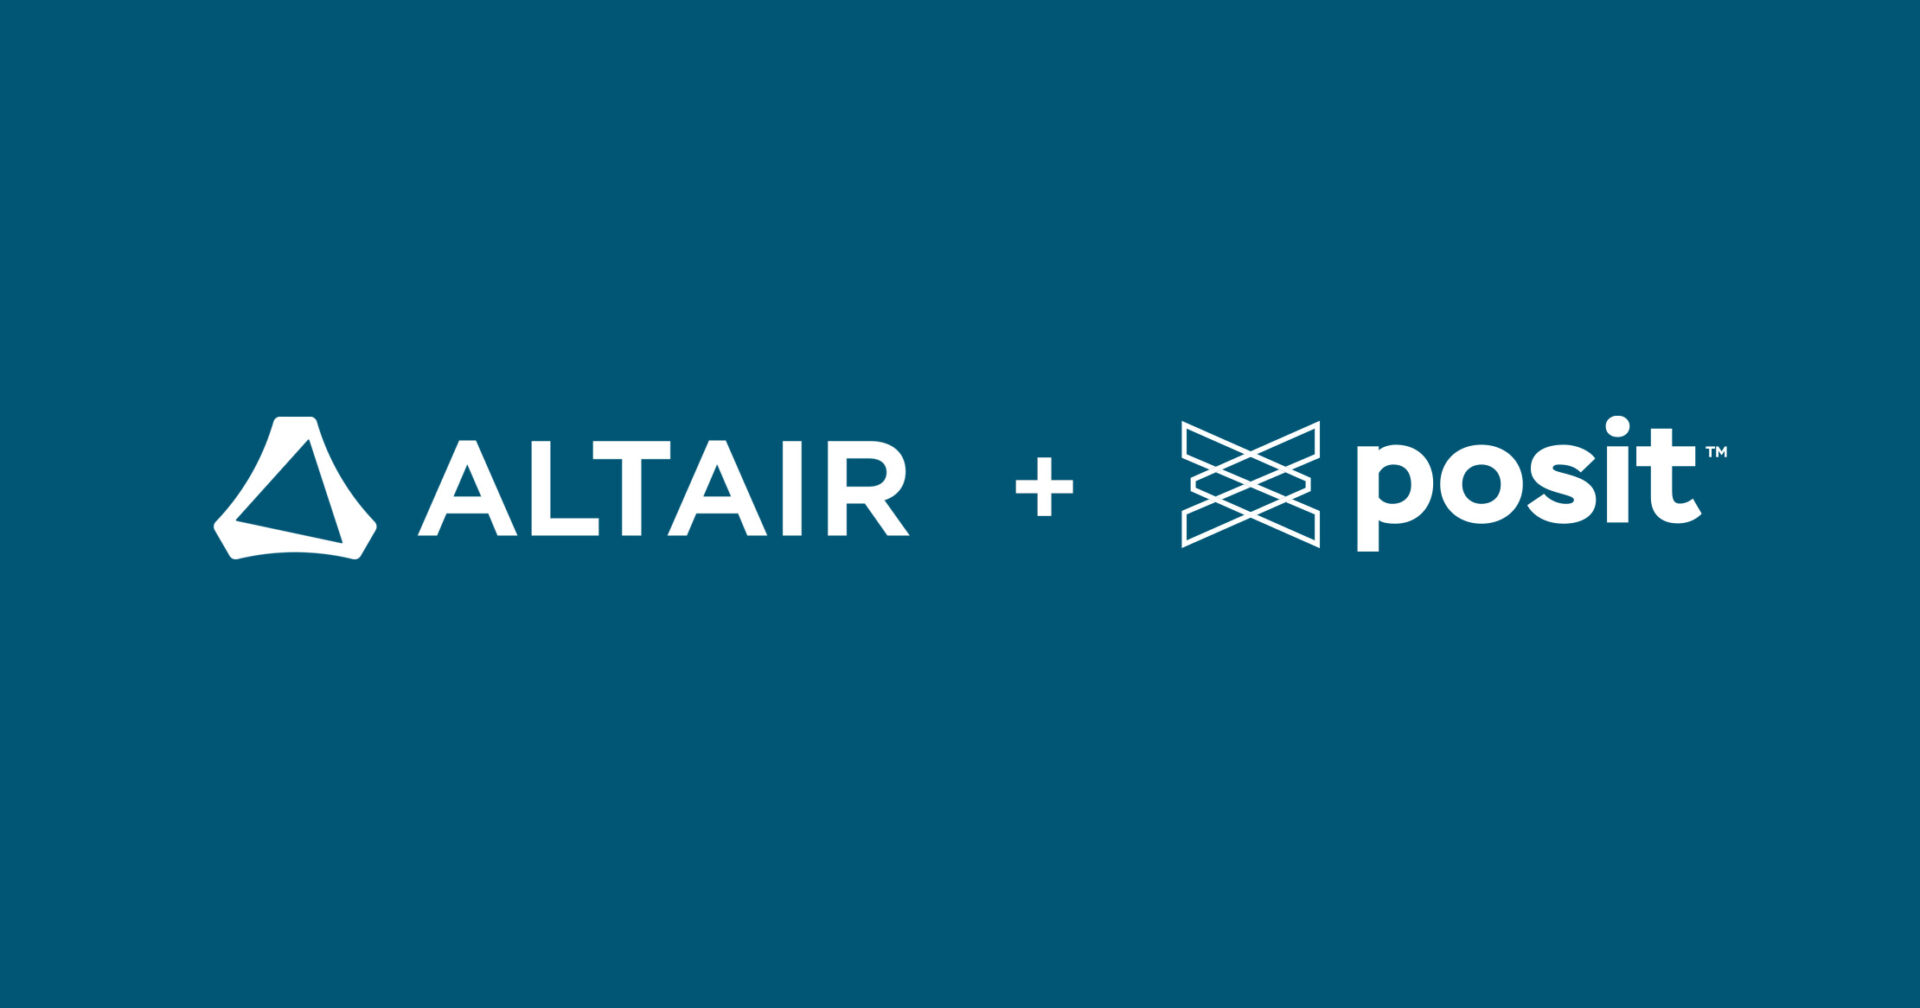 Altair logo plus Posit logo